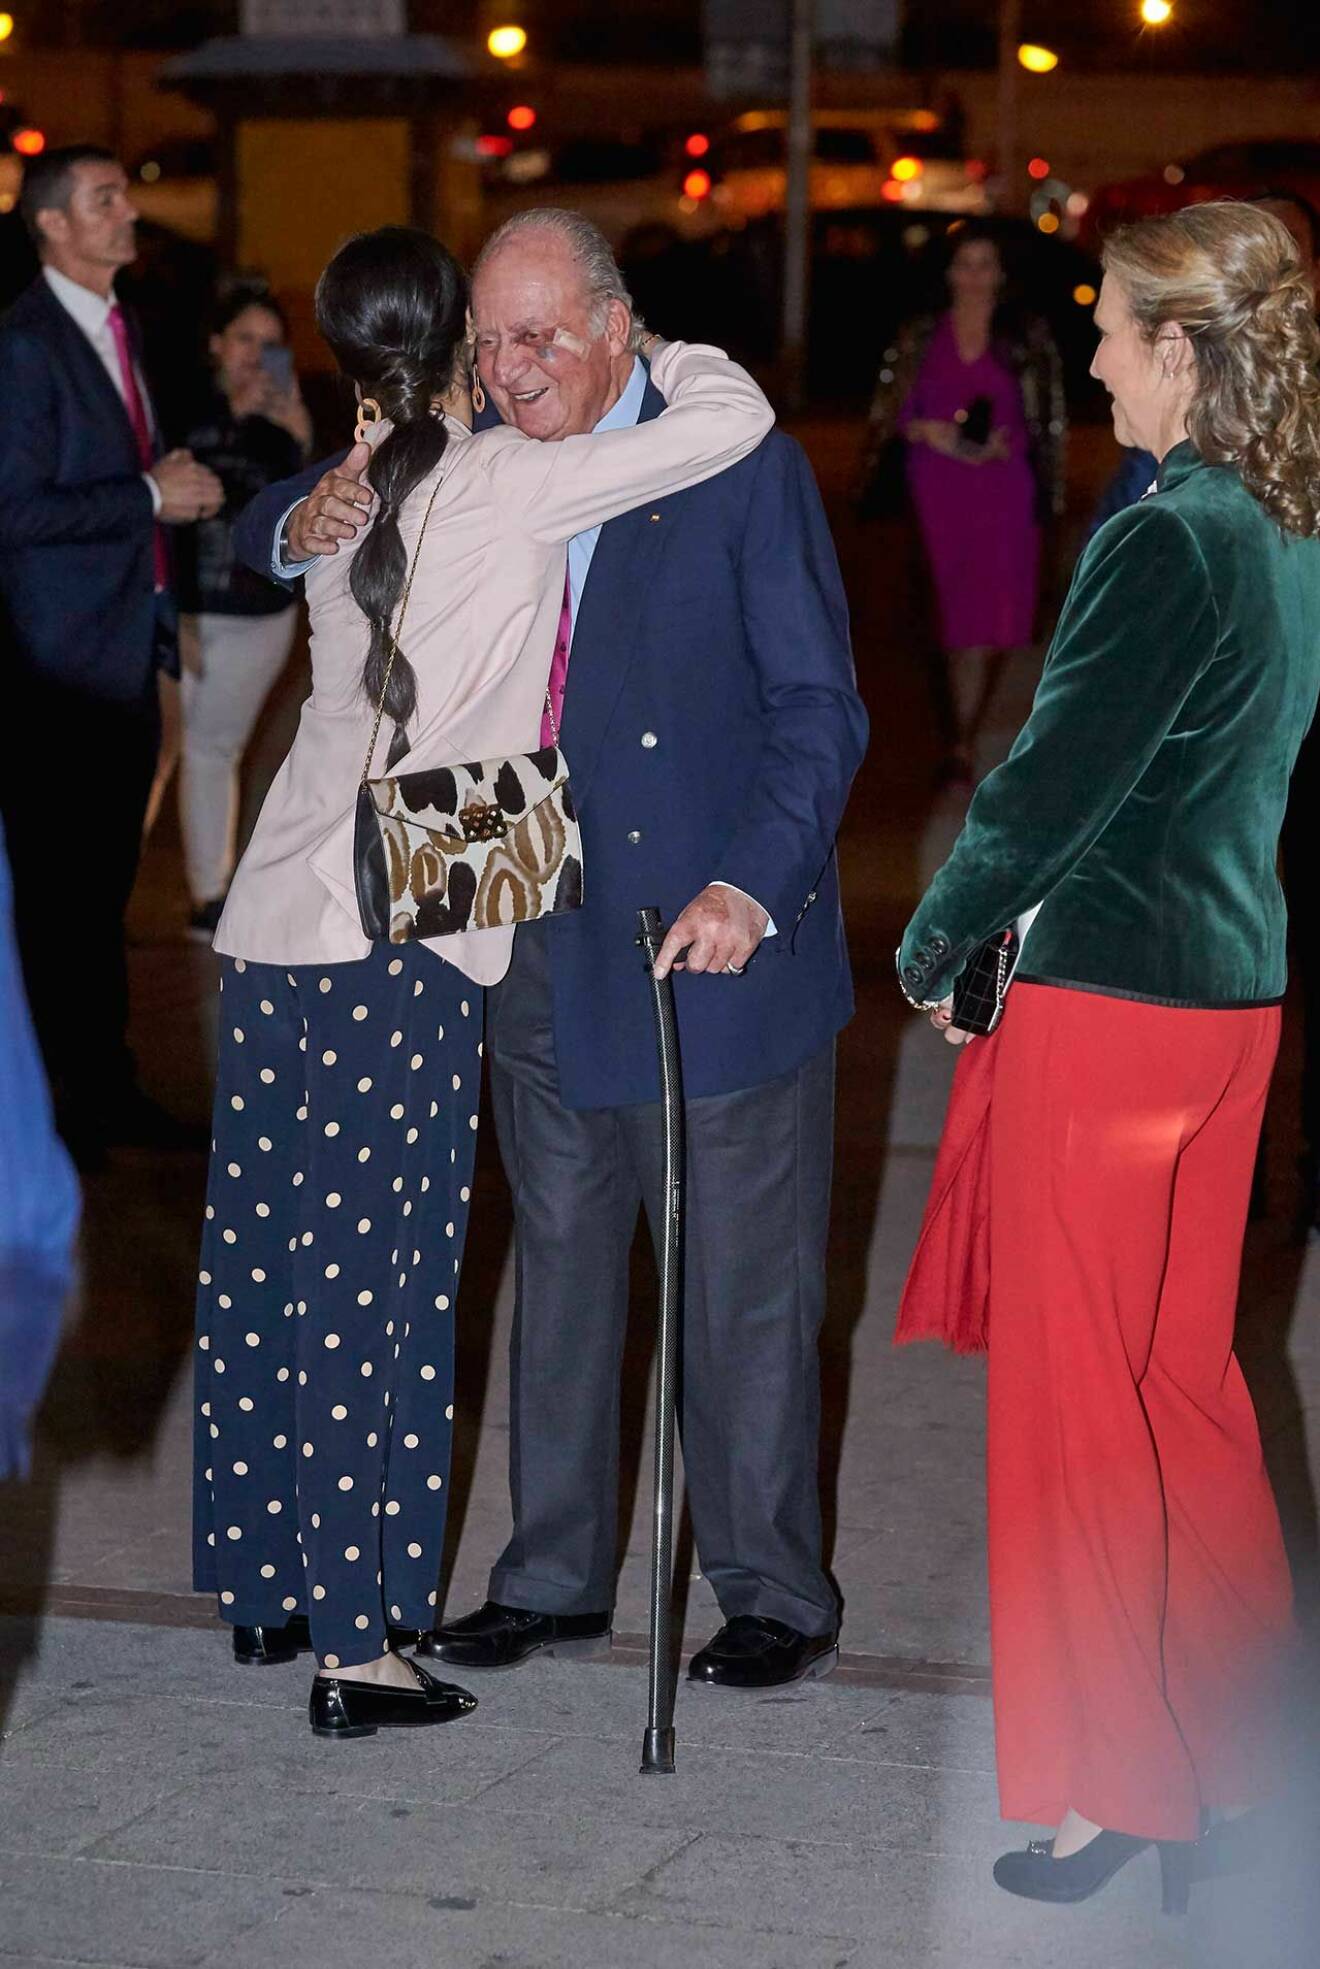 Juan Carlos hälsa har vacklat, här med blåslaget ansikte. 